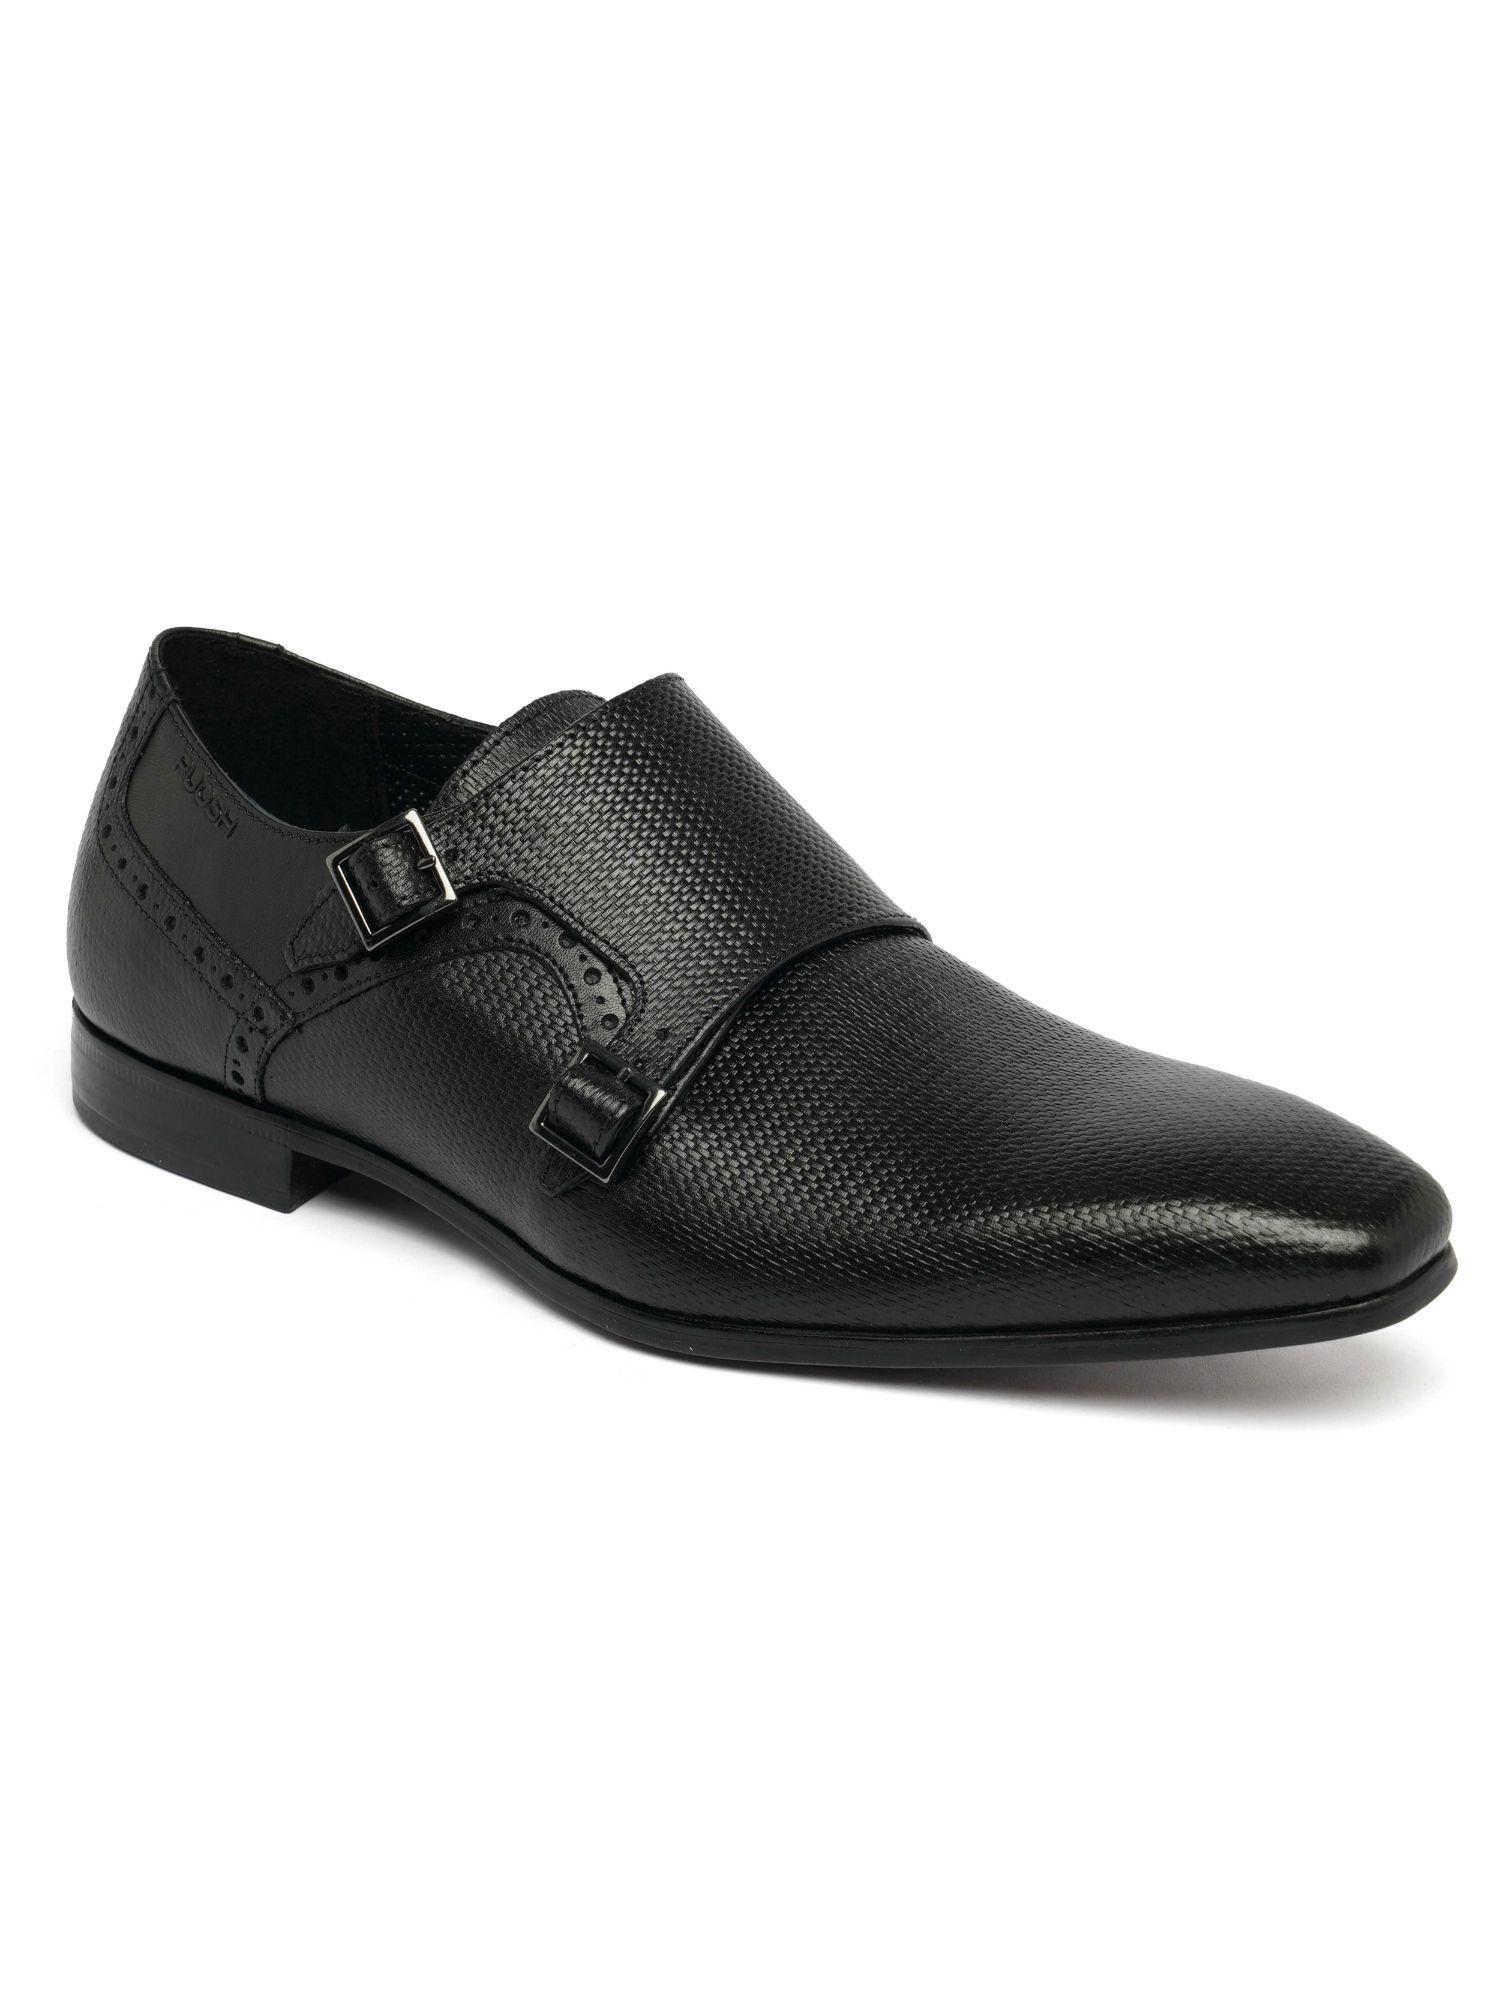 mens-footwear-work-monk-formal-black